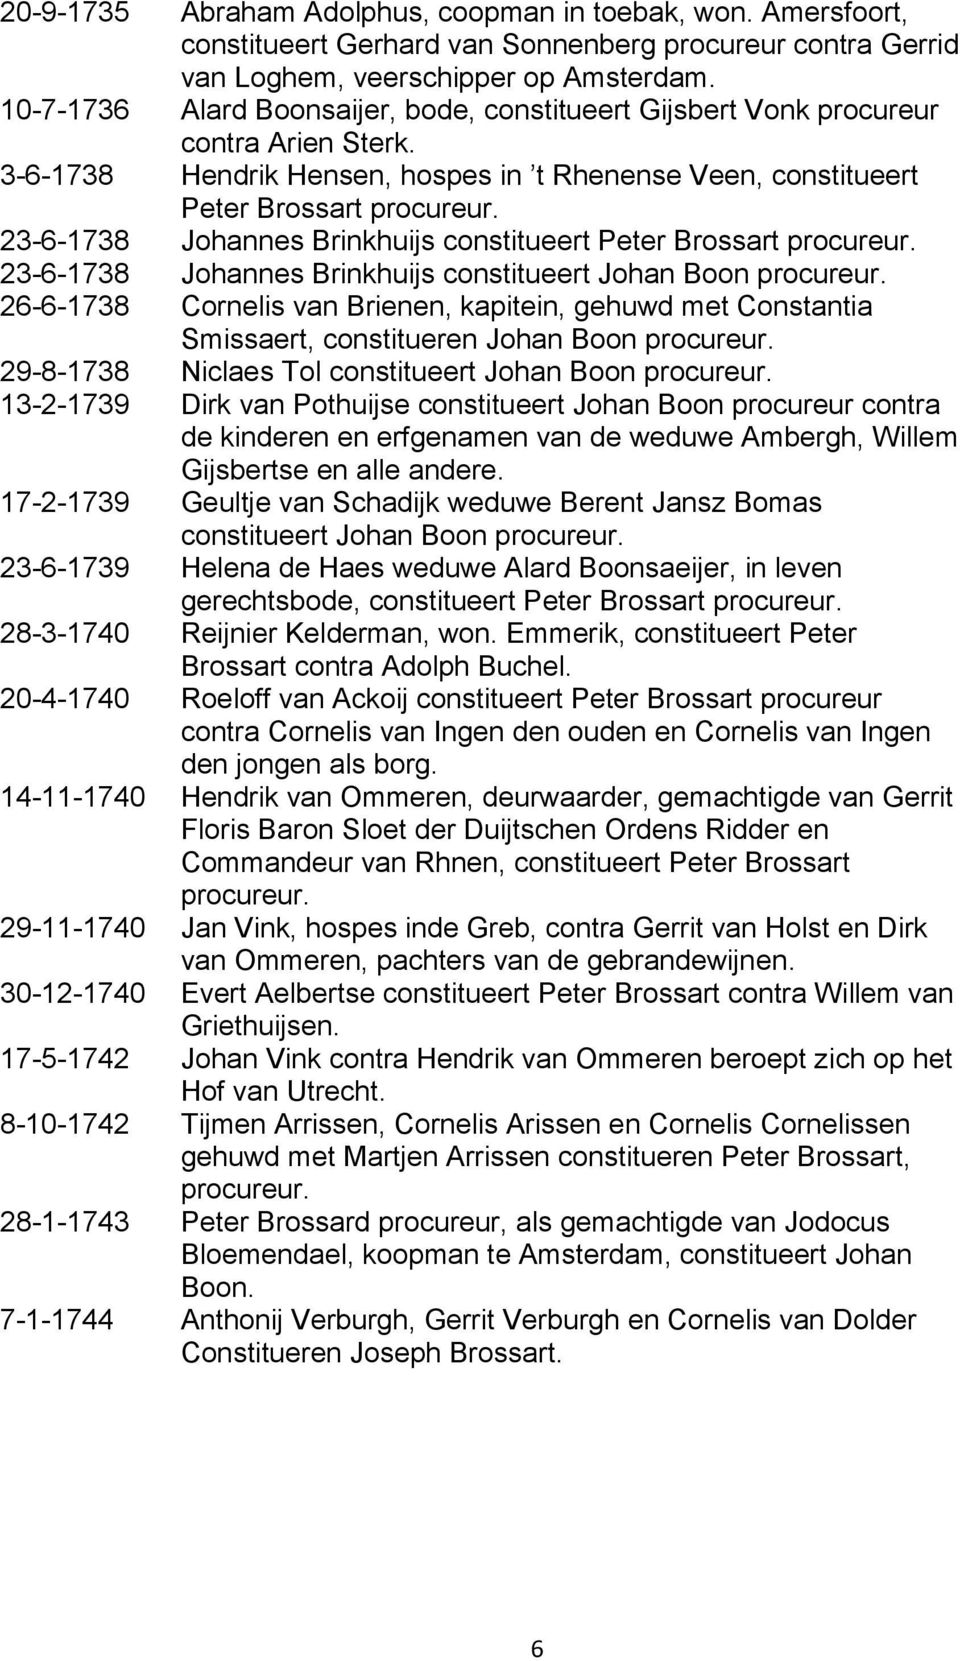 23-6-1738 Johannes Brinkhuijs constitueert Peter Brossart procureur. 23-6-1738 Johannes Brinkhuijs constitueert Johan Boon procureur.